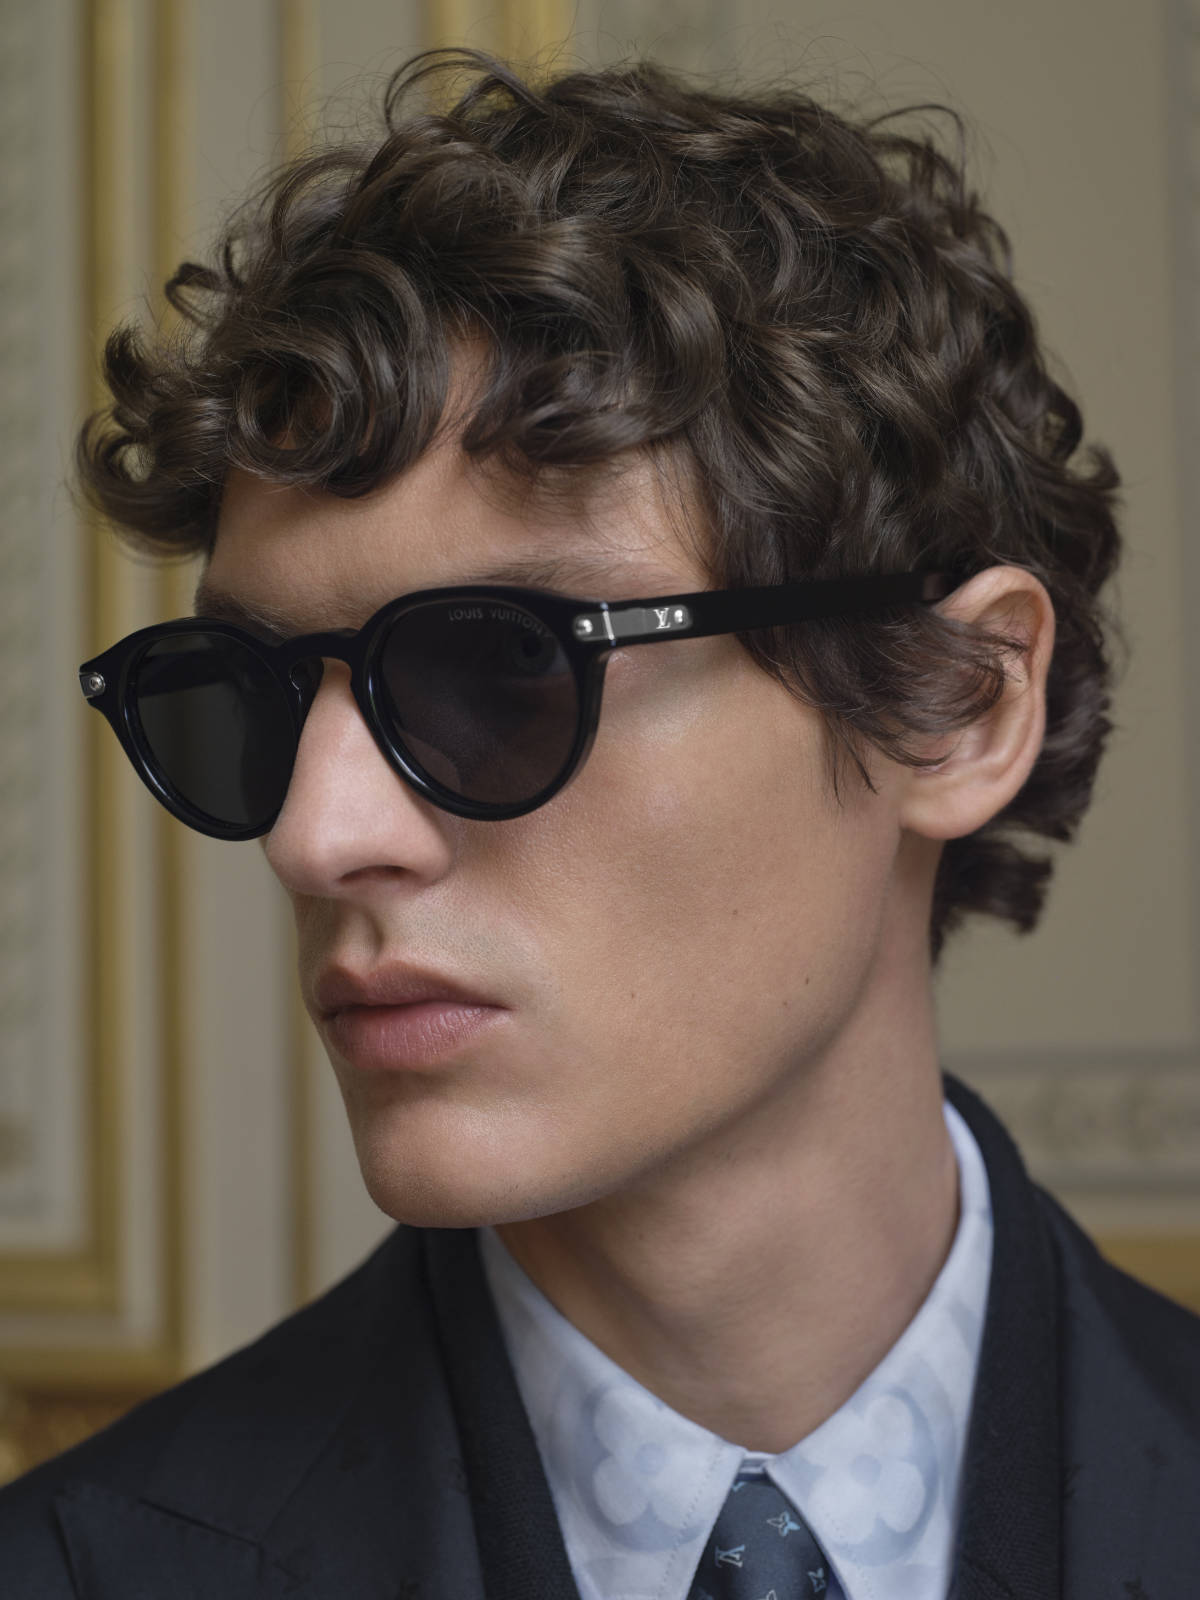 Louis Vuitton Unveils Reimagined Men's Classics - DuJour